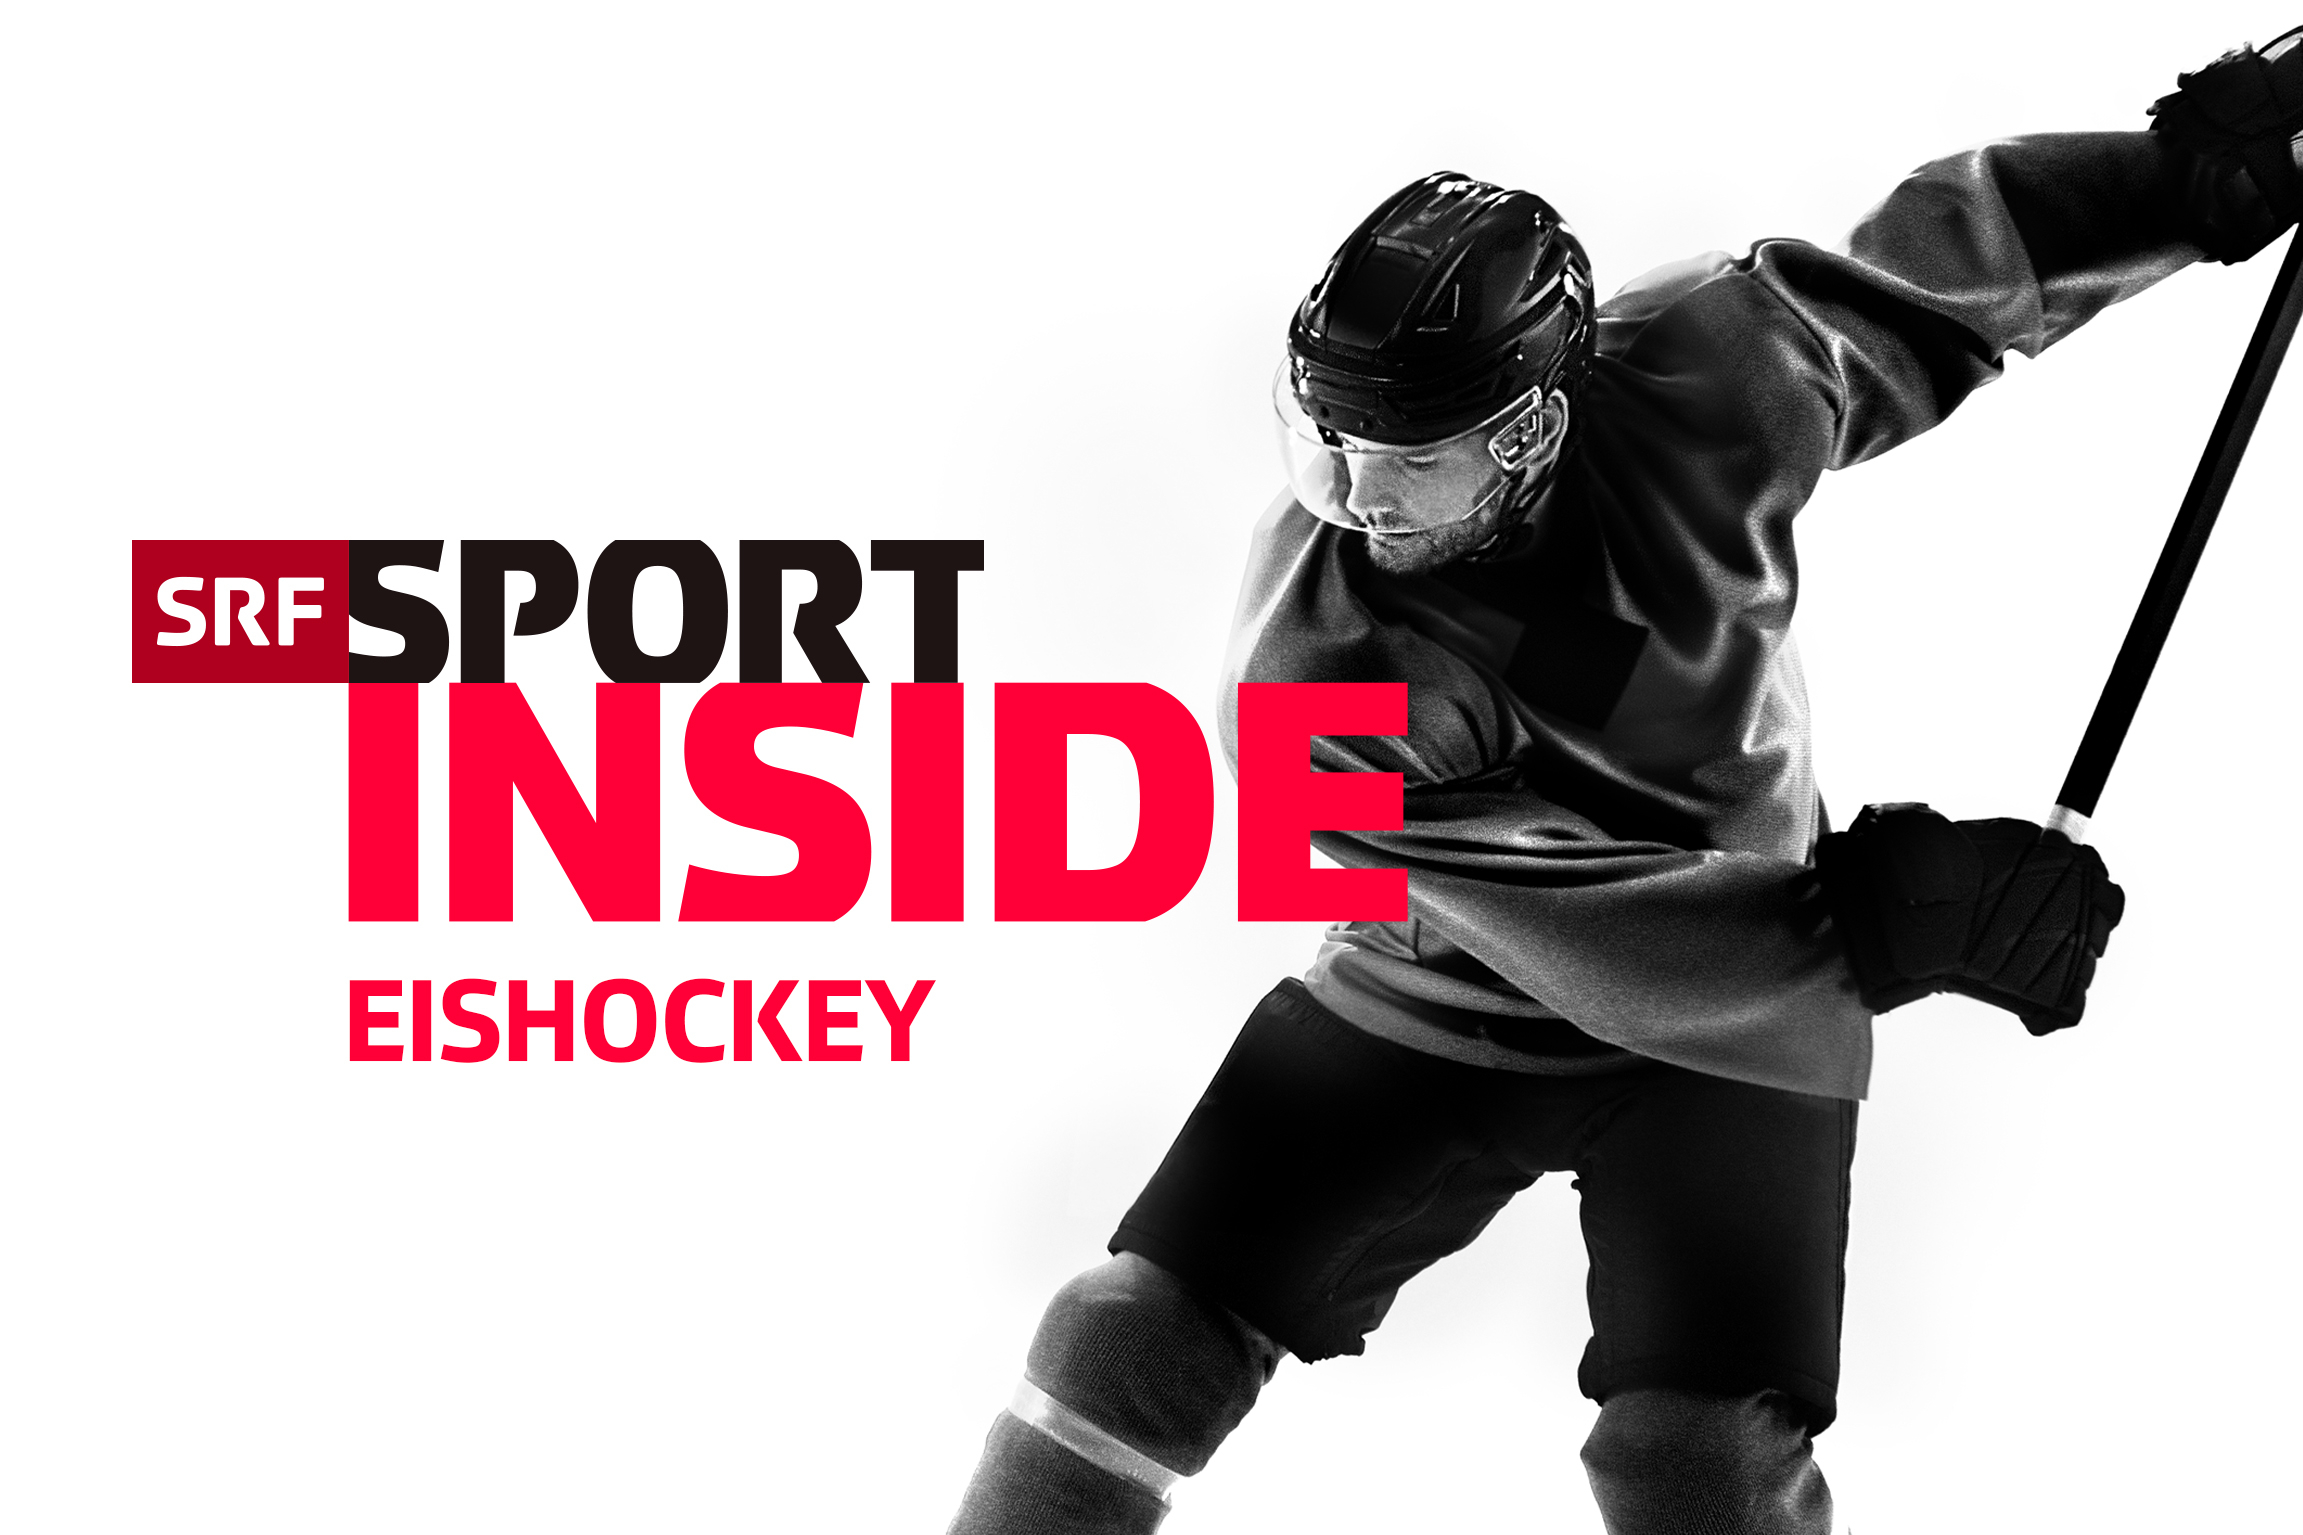 SRF Sport Eishockey – Inside Keyvisual 